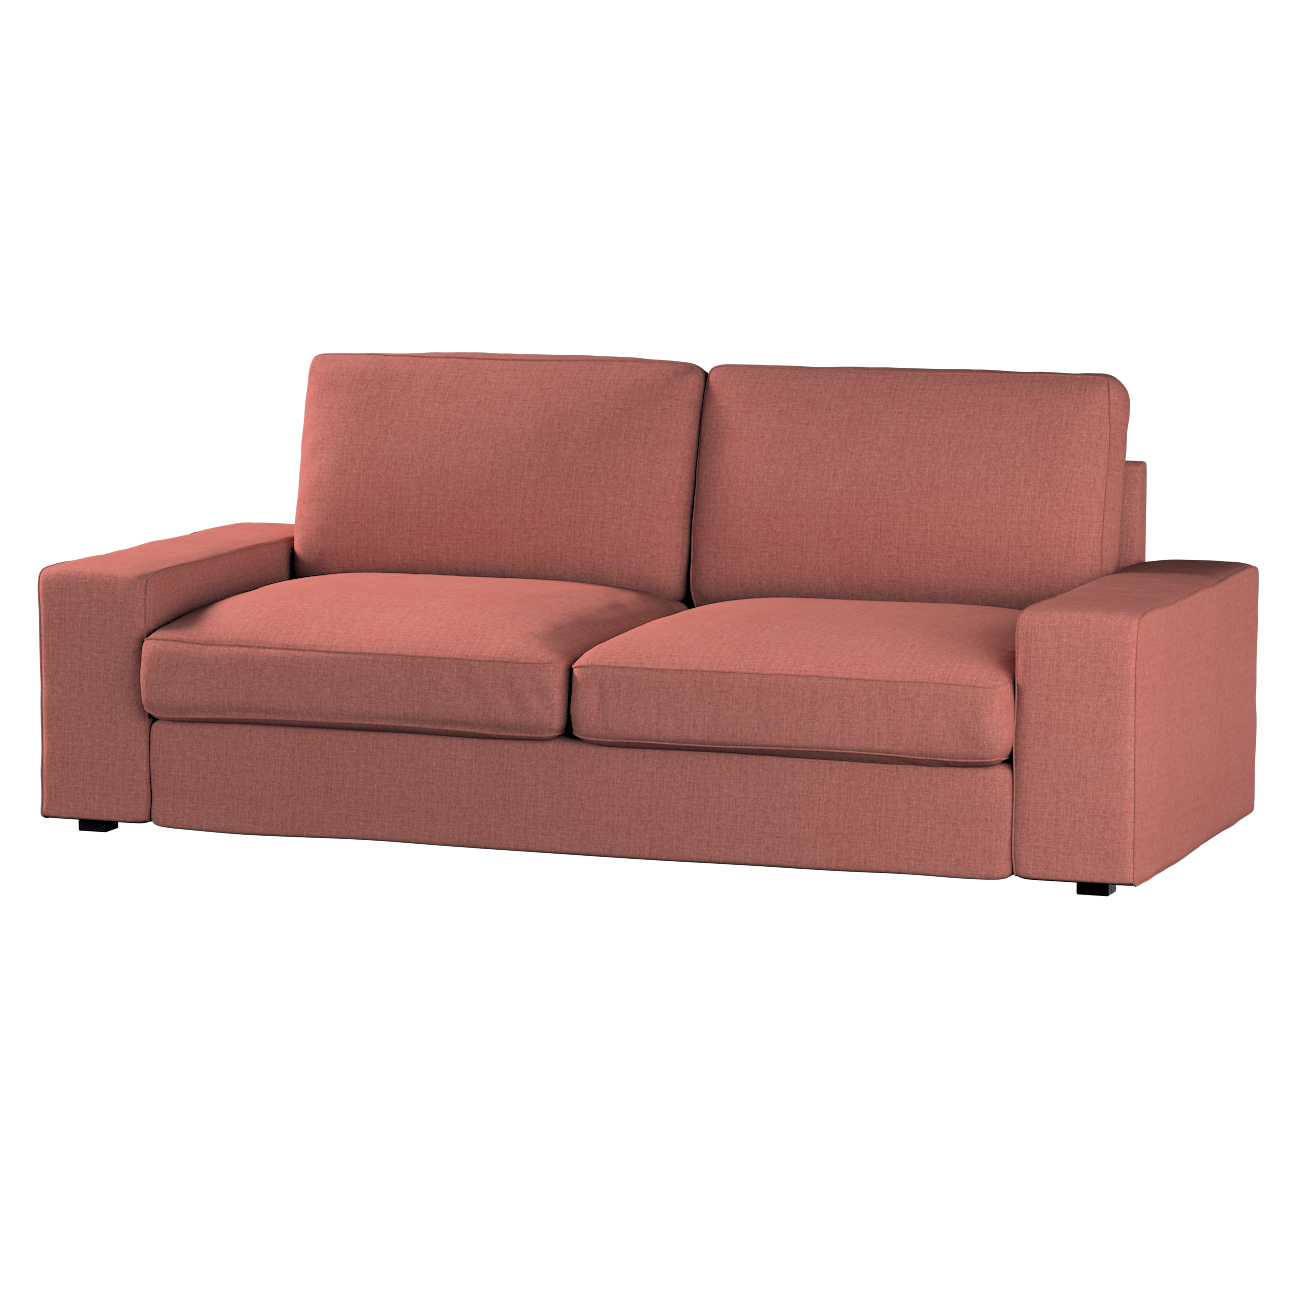 Bezug für Kivik 3-Sitzer Sofa, cognac braun, Bezug für Sofa Kivik 3-Sitzer, günstig online kaufen